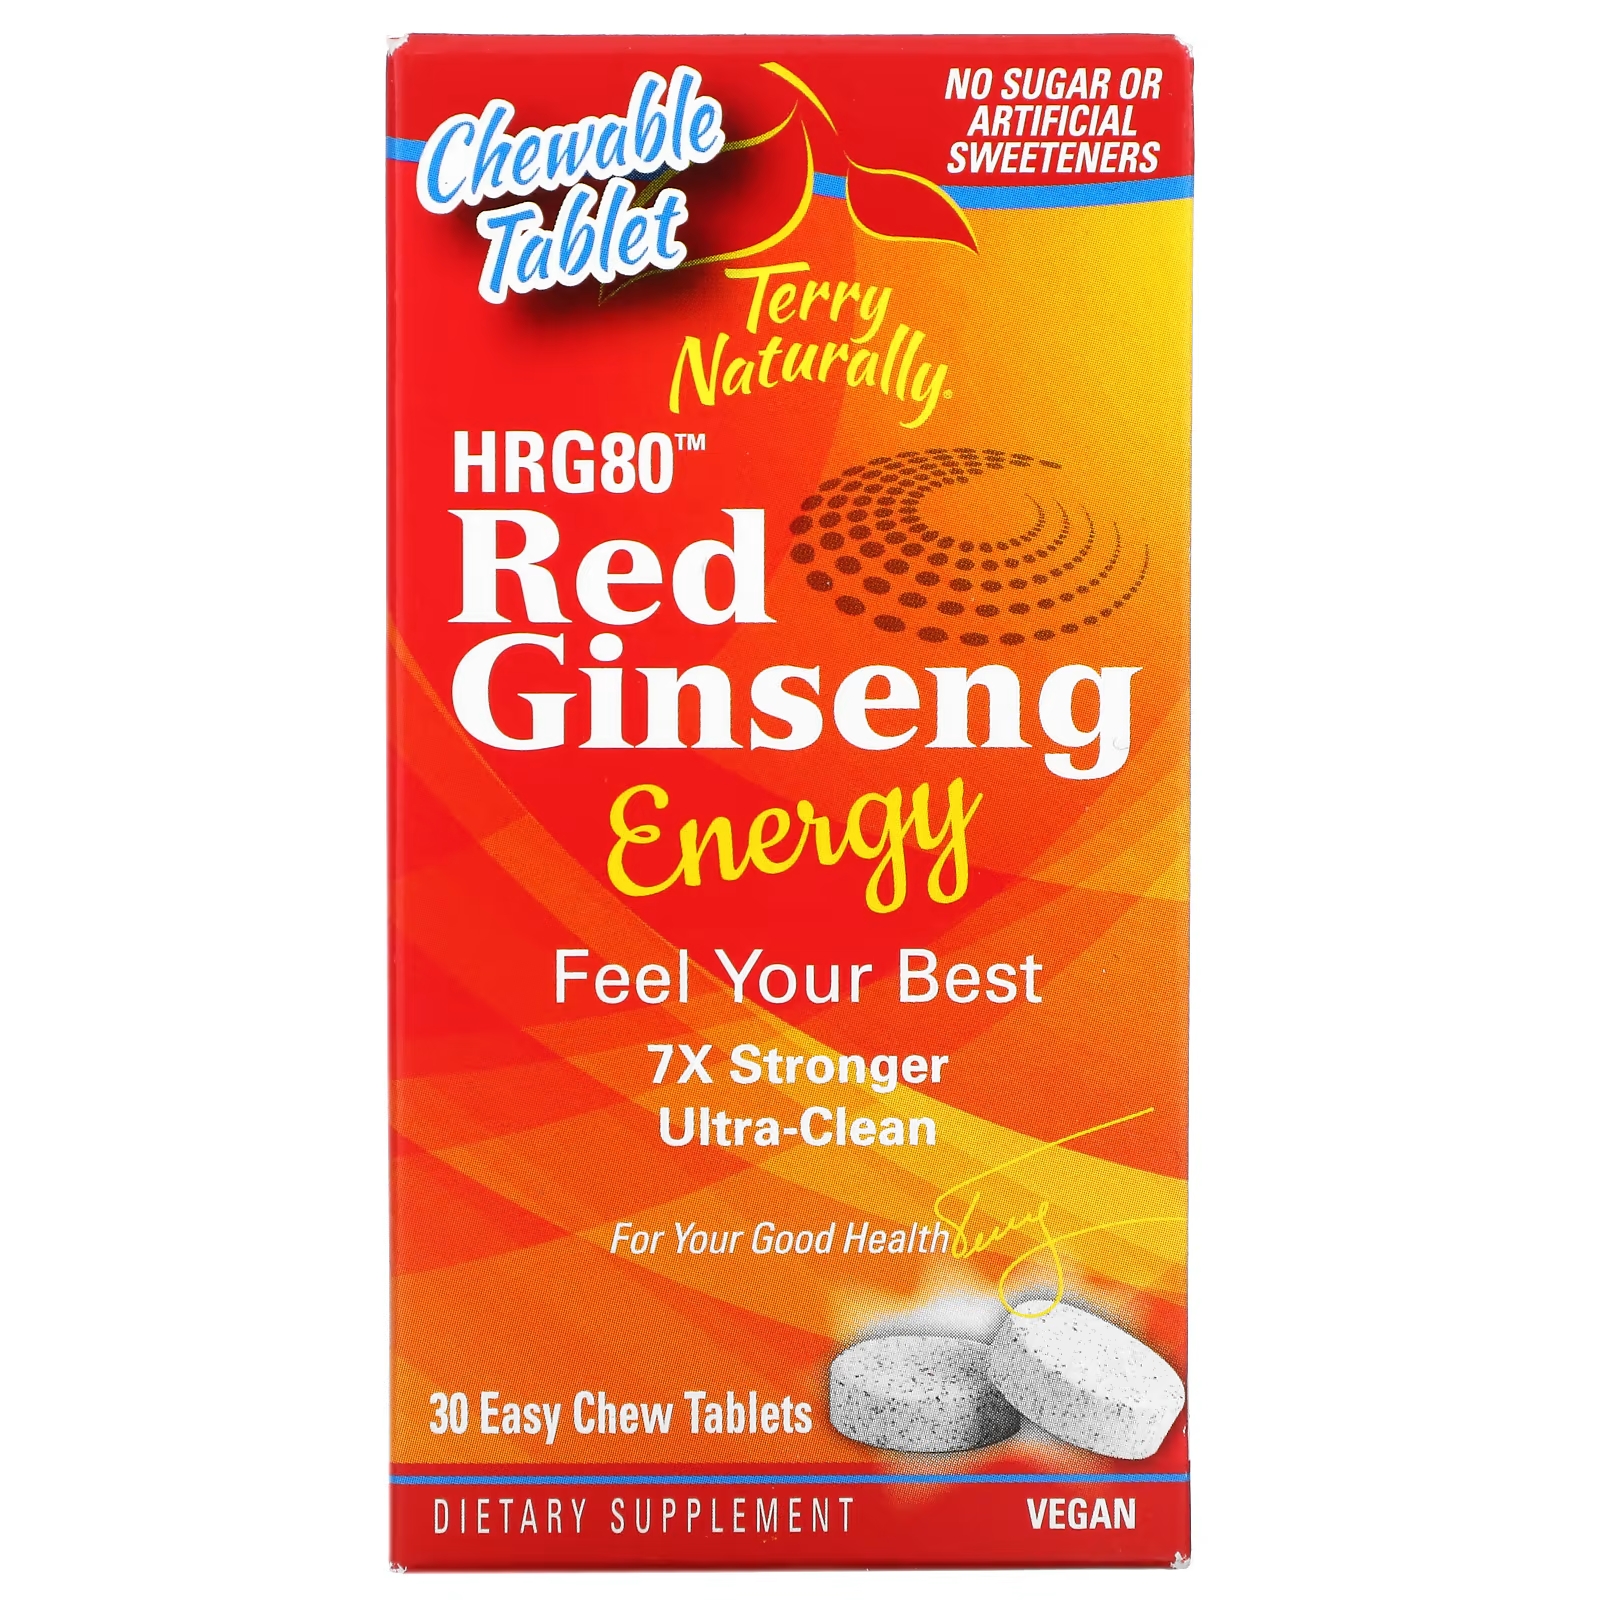 Пищевая Добавка Terry Naturally HRG80 Red Ginseng Energy, 30 жевательных таблеток